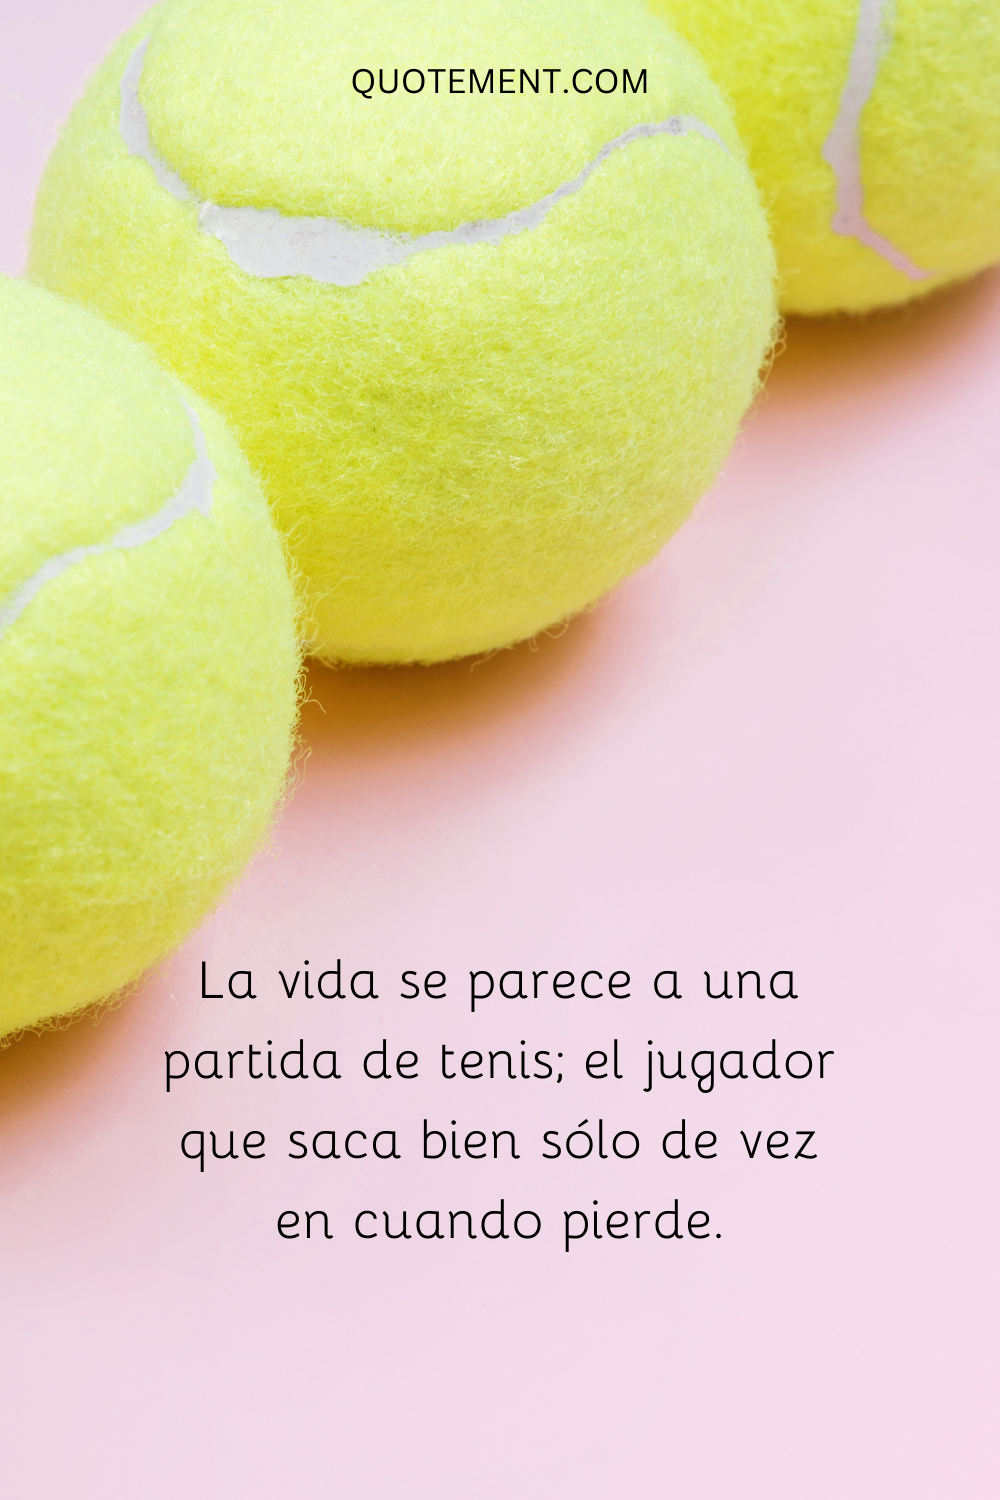 La vida se parece a una partida de tenis; el jugador que saca bien sólo de vez en cuando pierde.